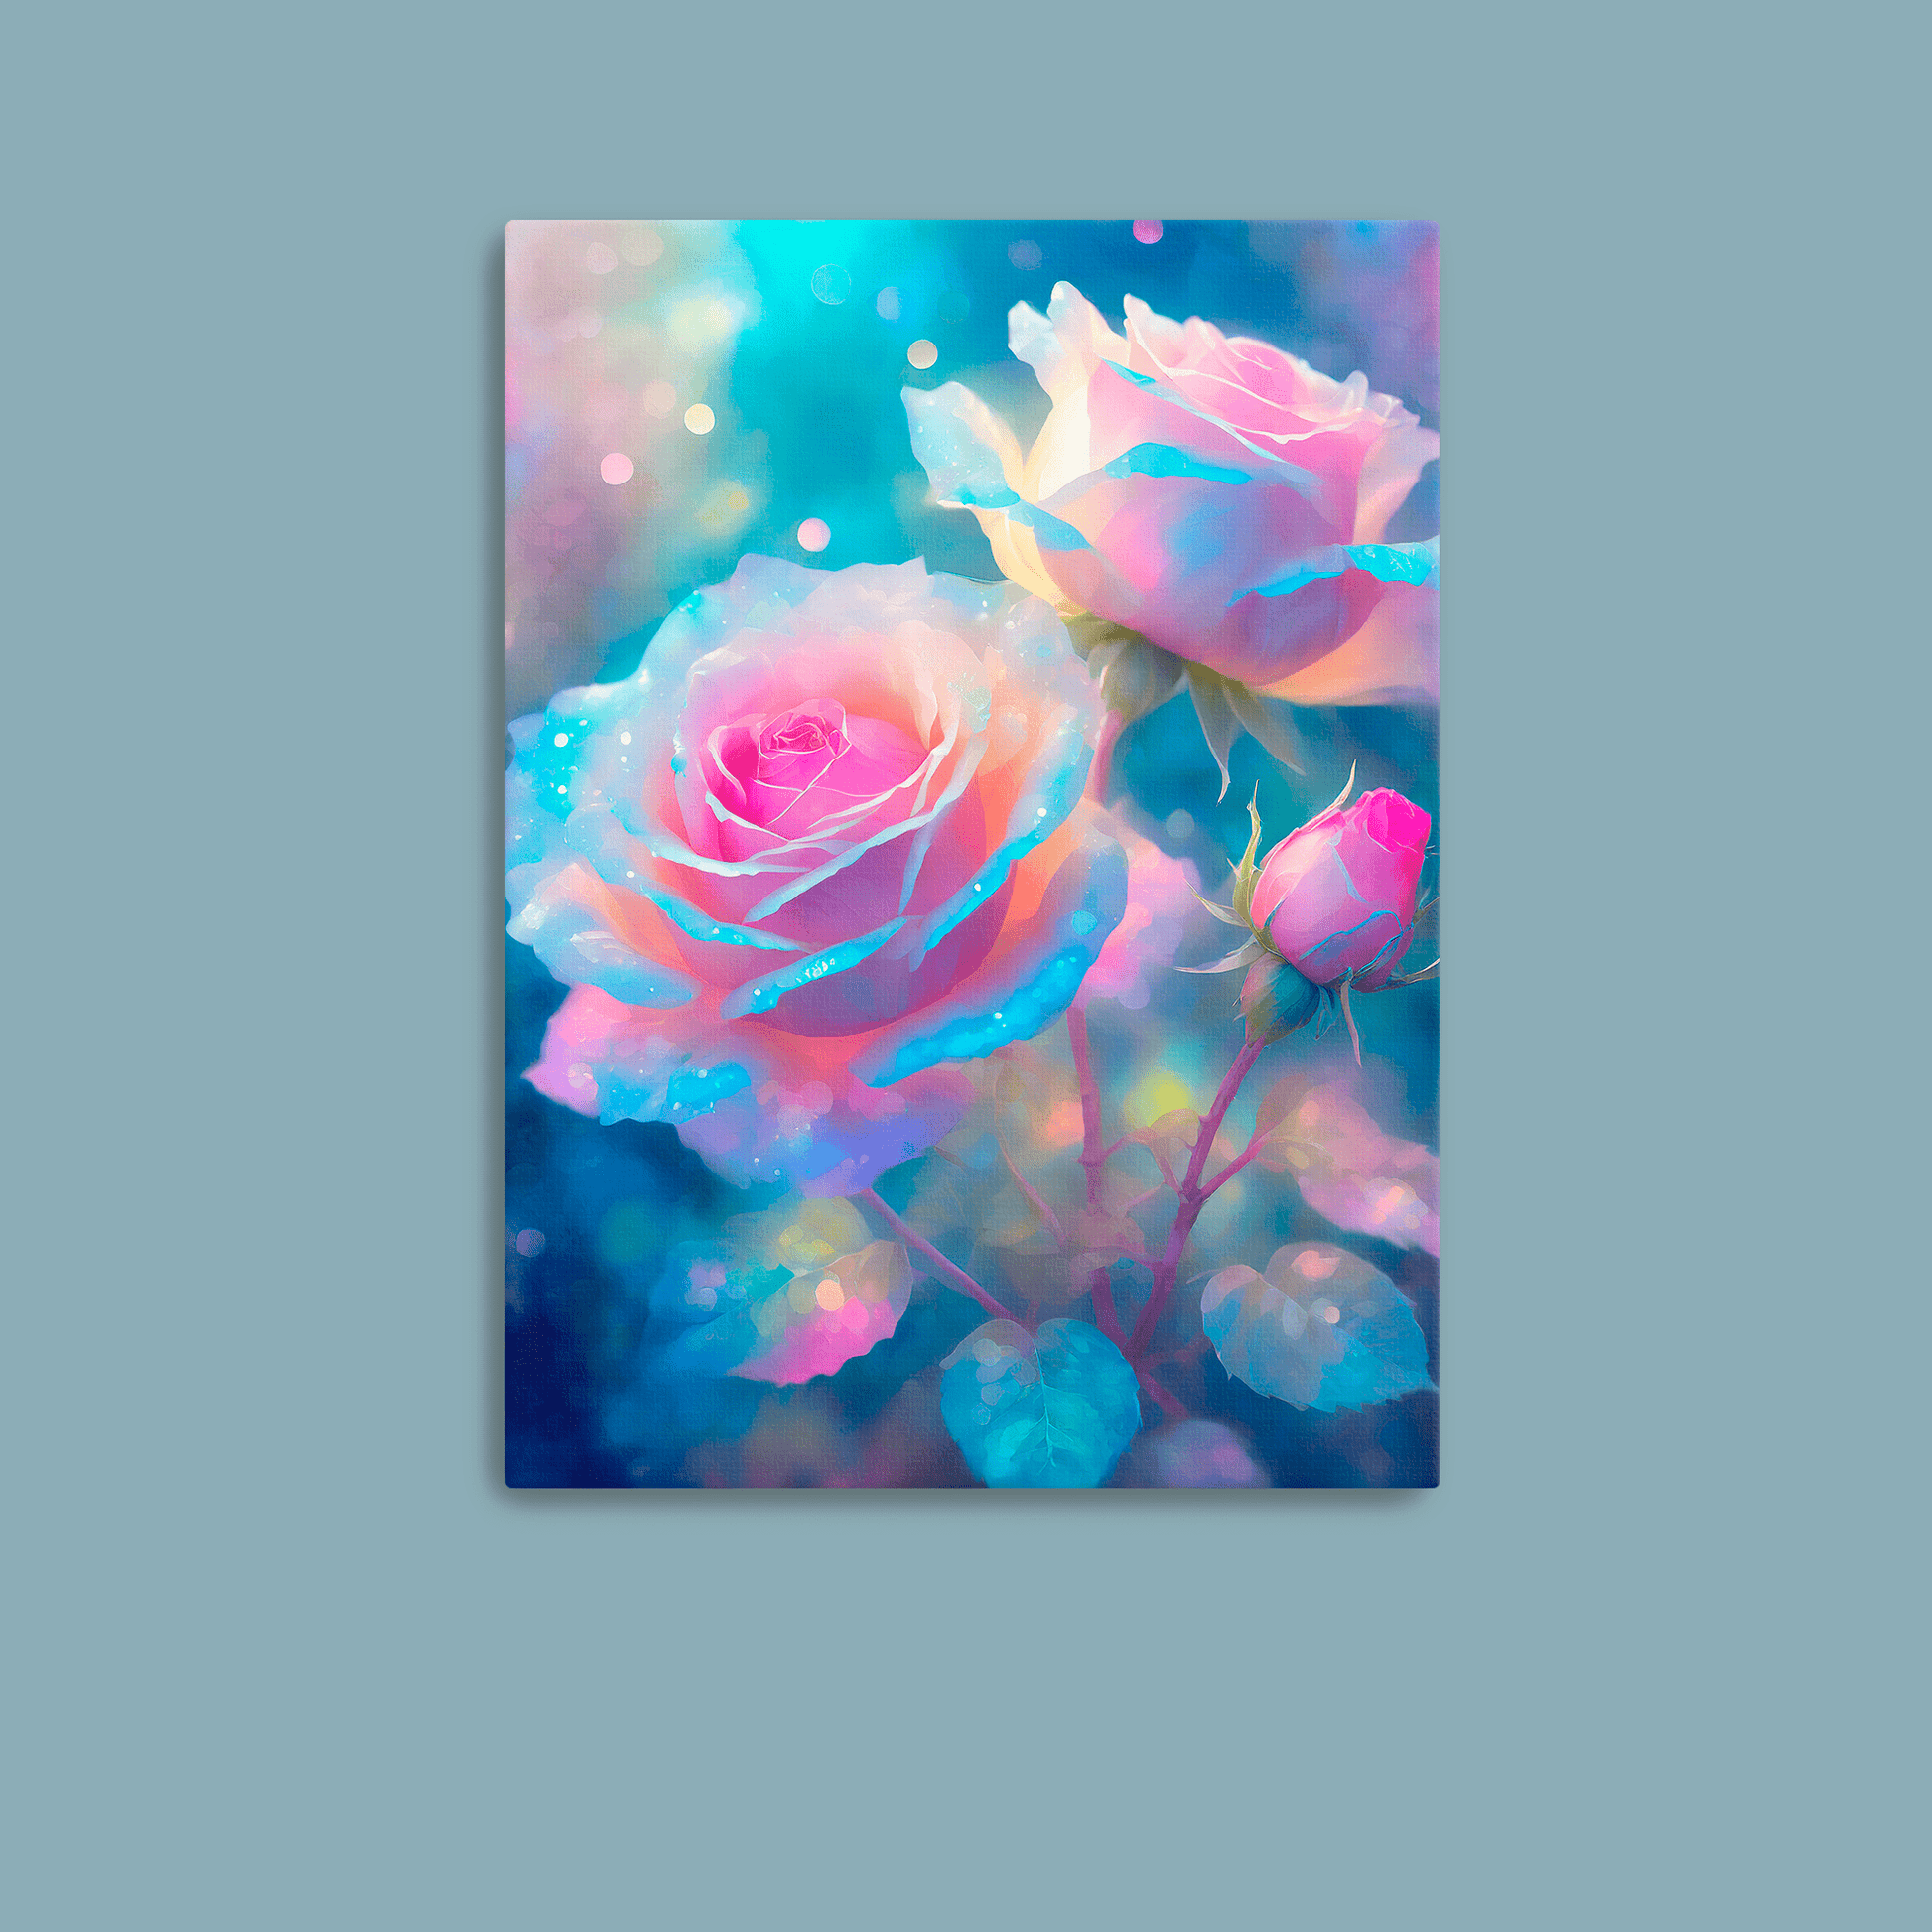 Celestial Roses - Canvas Wrap - Premium Canvas Wrap